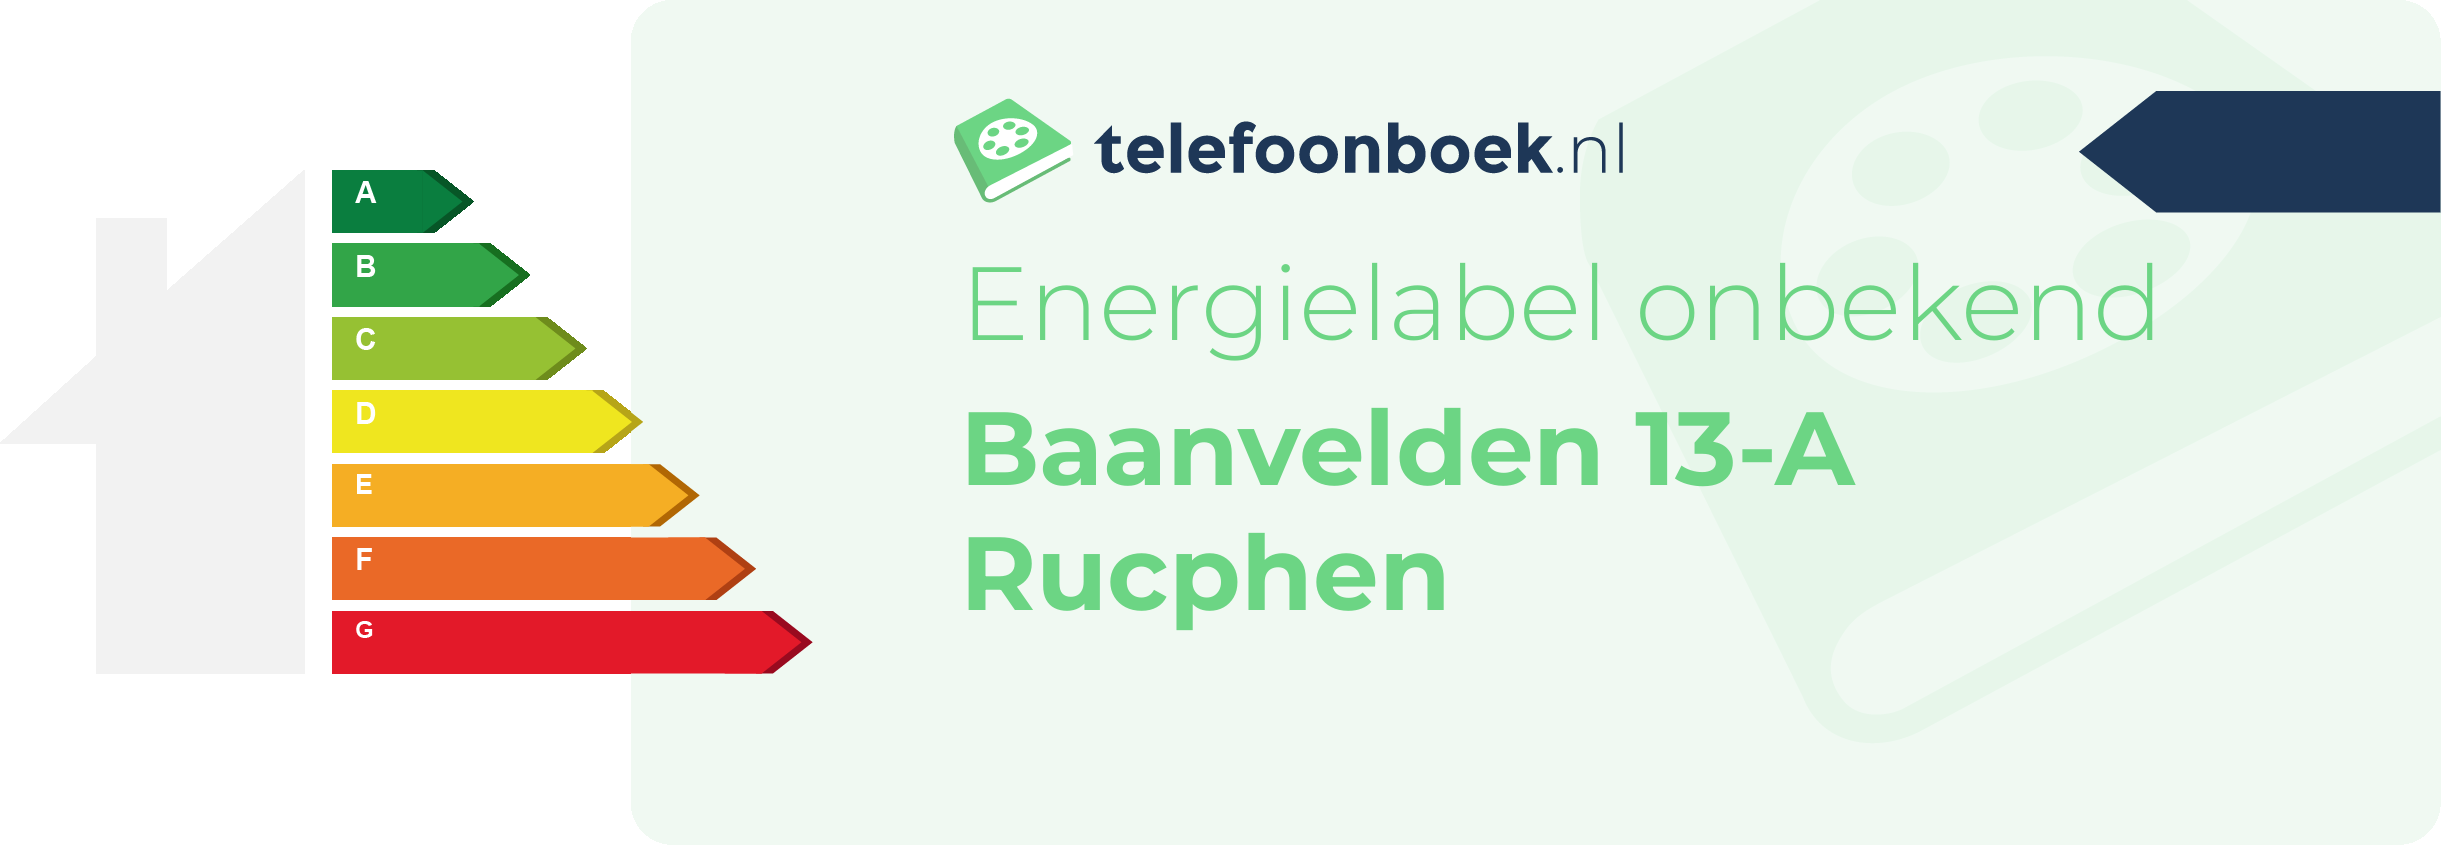 Energielabel Baanvelden 13-A Rucphen